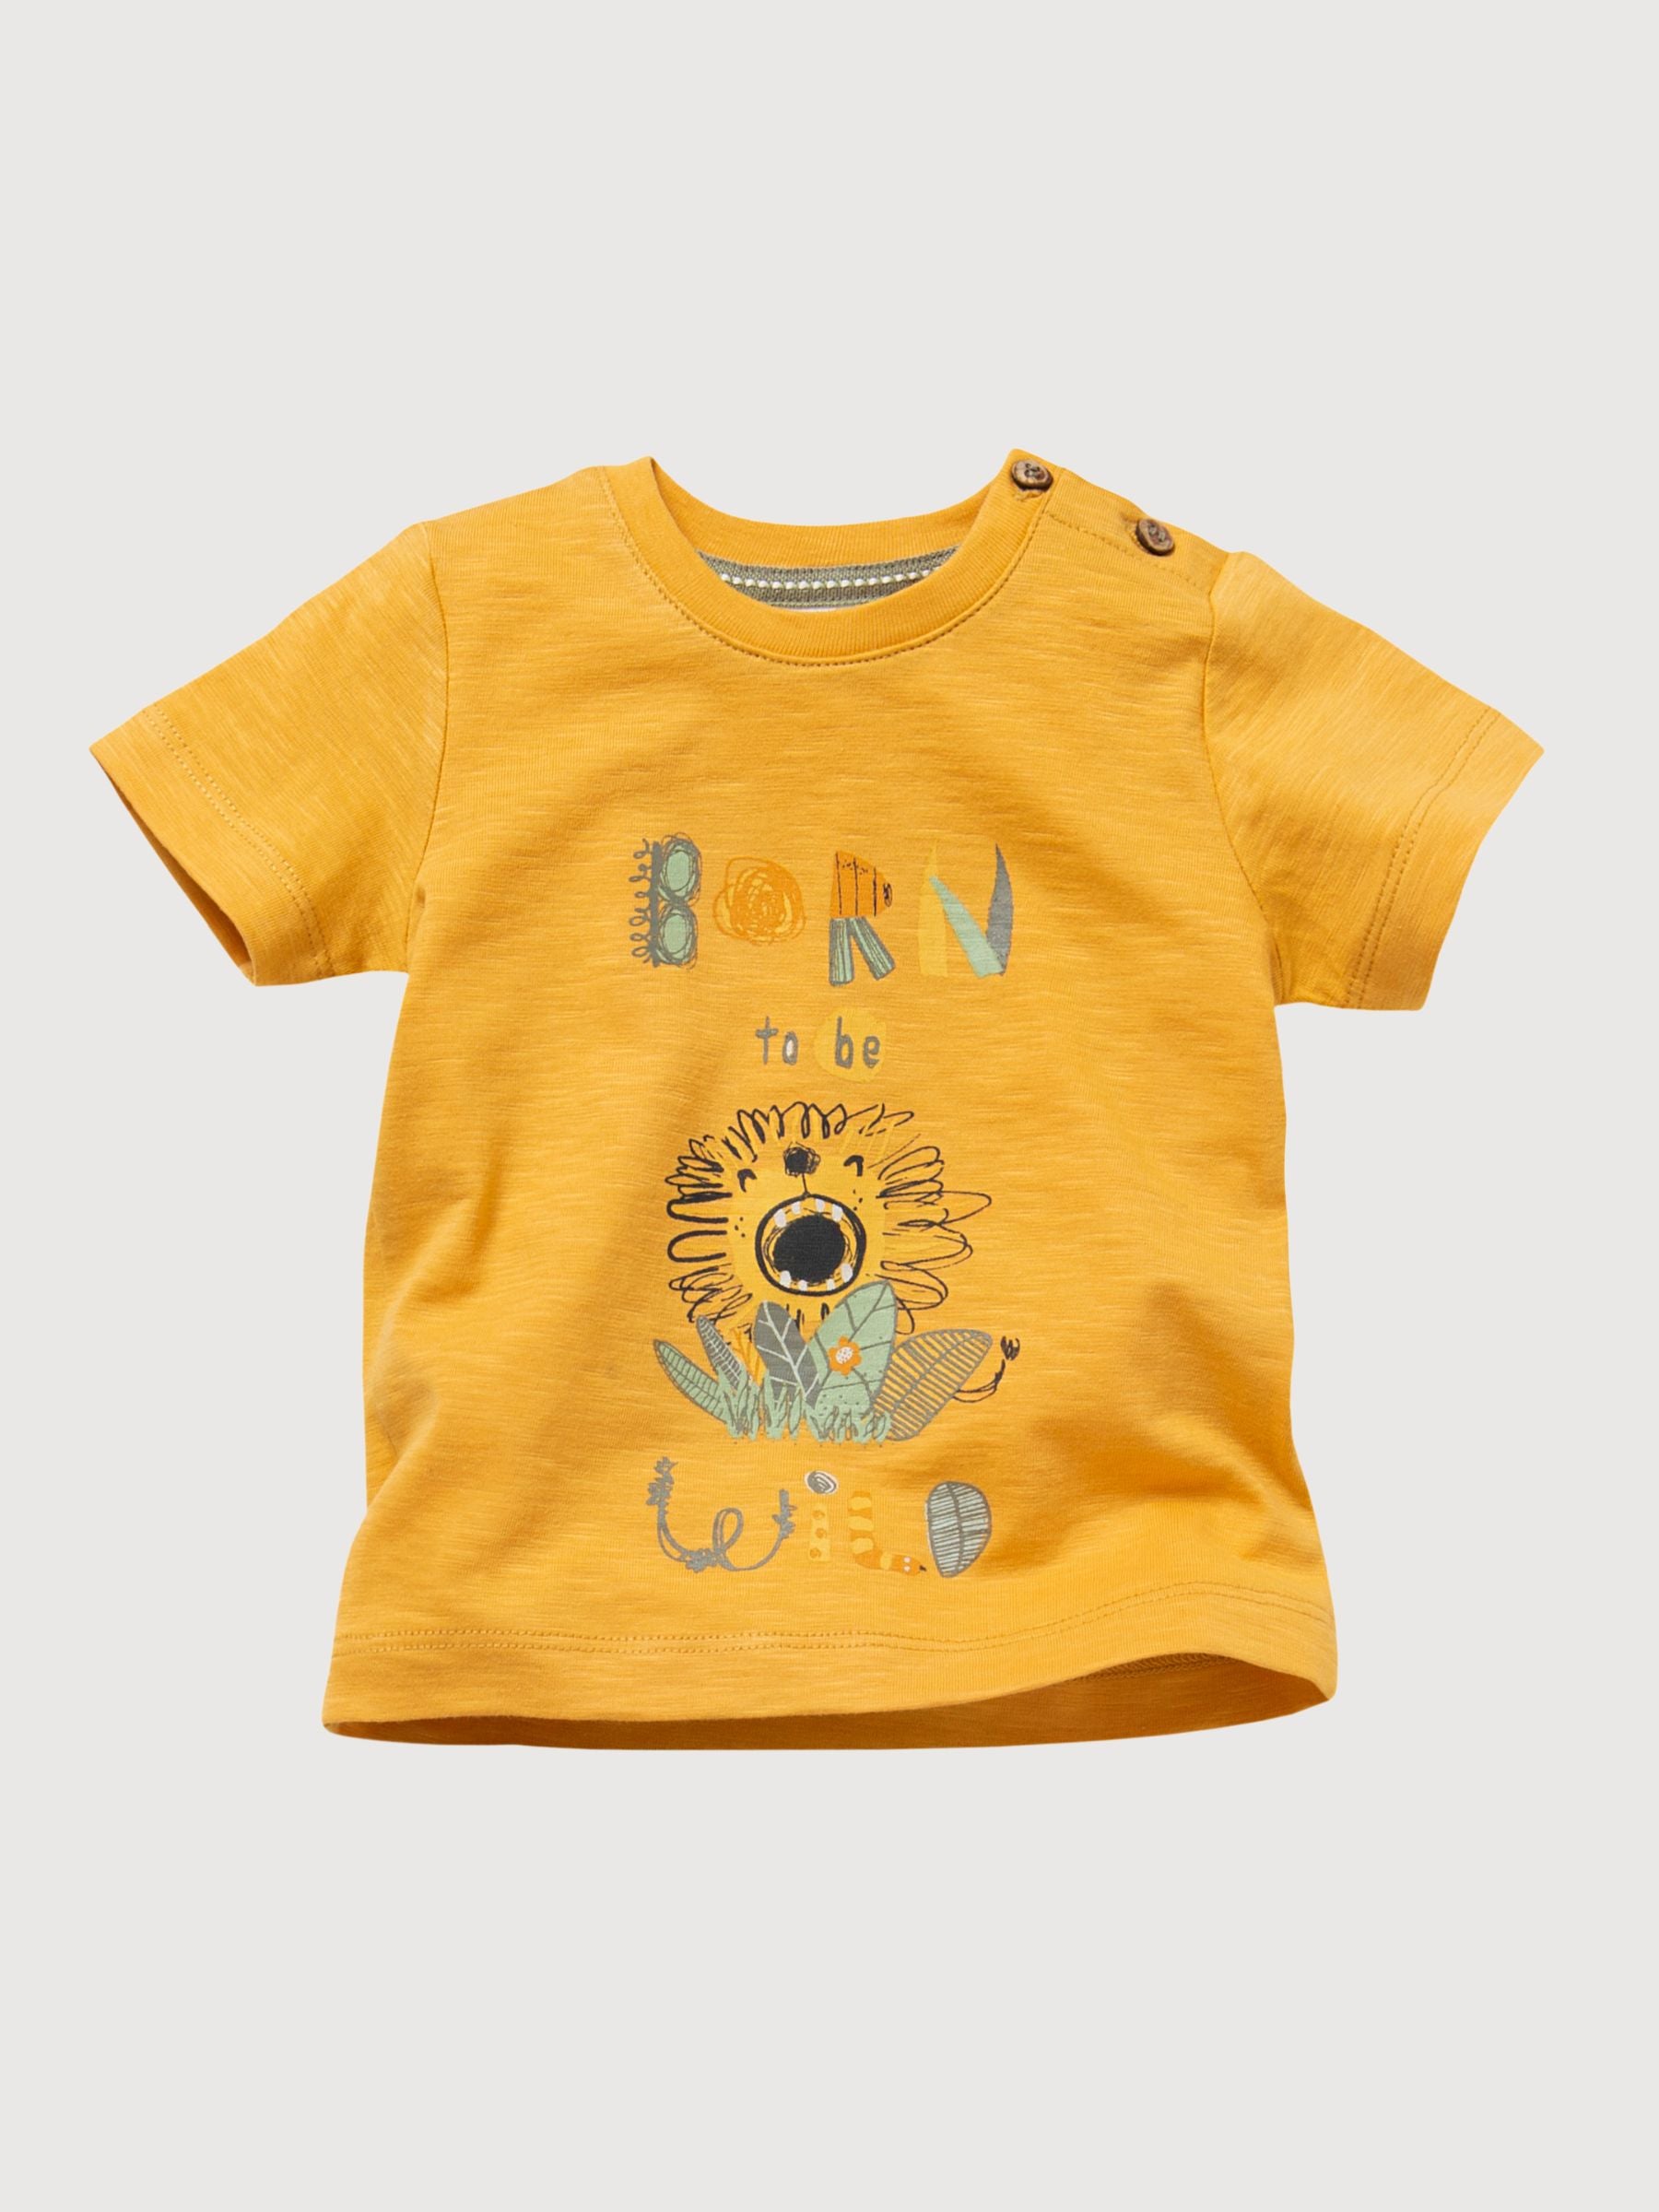 T-shirt a maniche corte Bambino Giallo Cotone organico | People Wear Organic